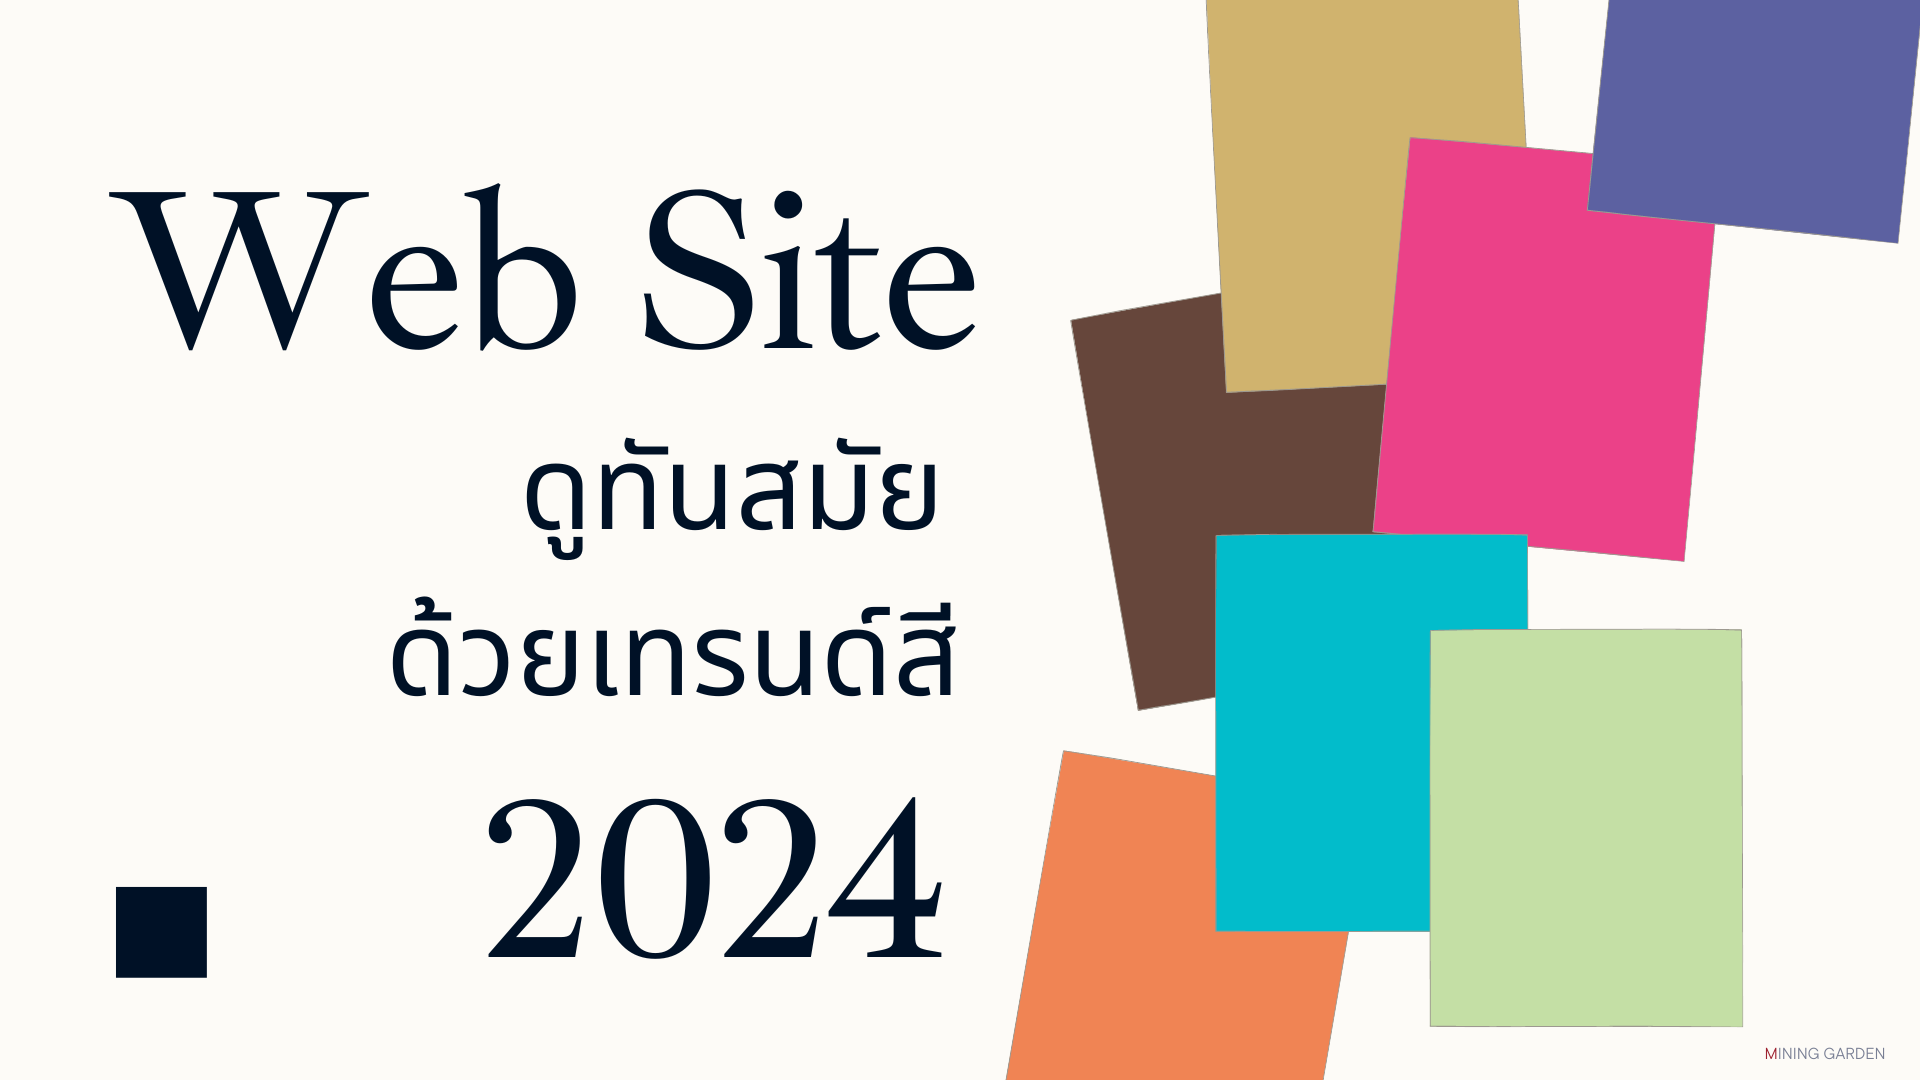 ปรับหน้าเว็บไซต์ให้ดูทันสมัย ด้วยเทรนด์สีแห่งปี 2024